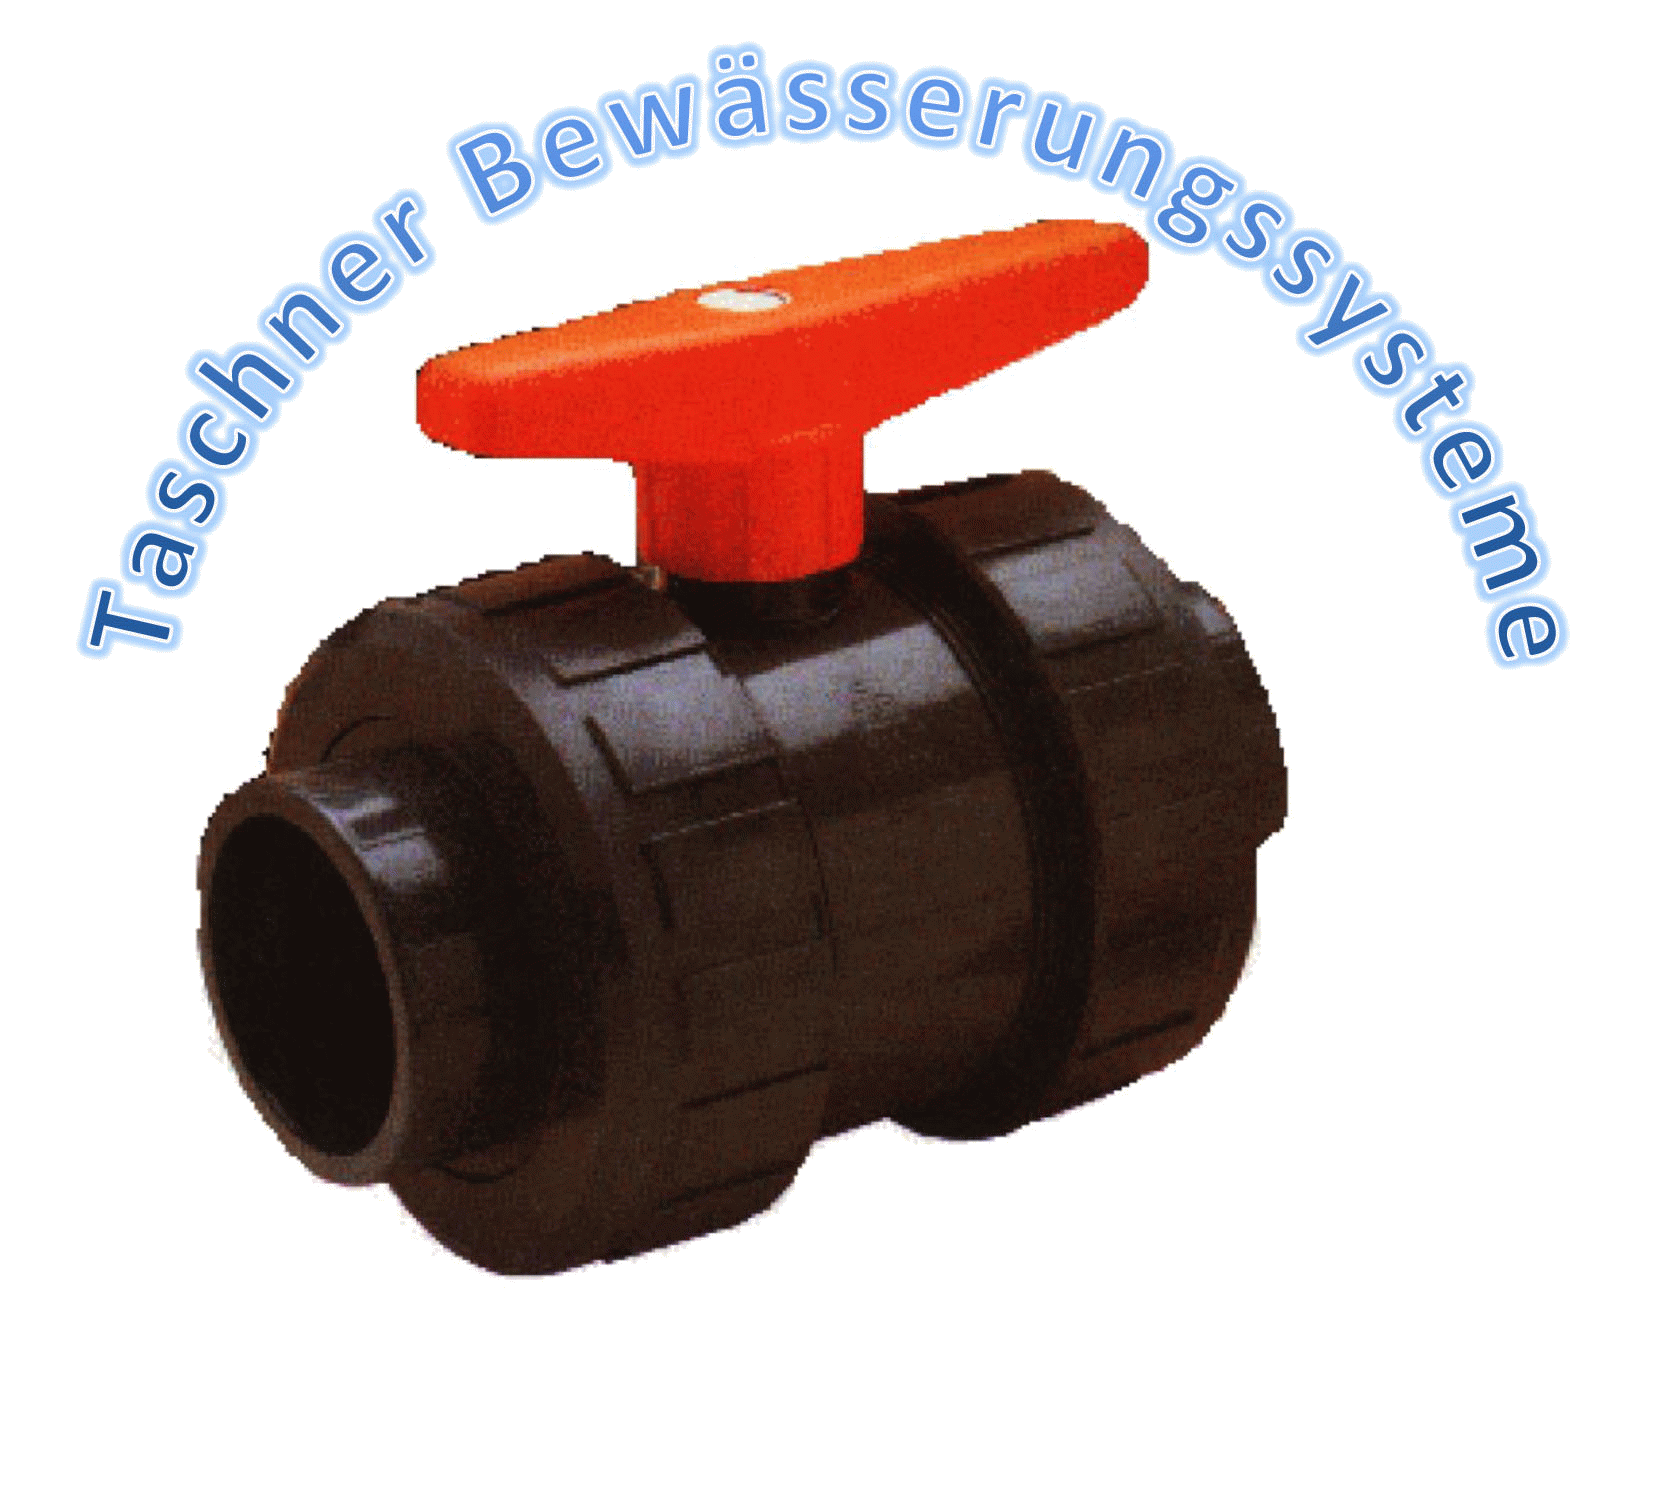 Taschner Bewässerungssysteme logo